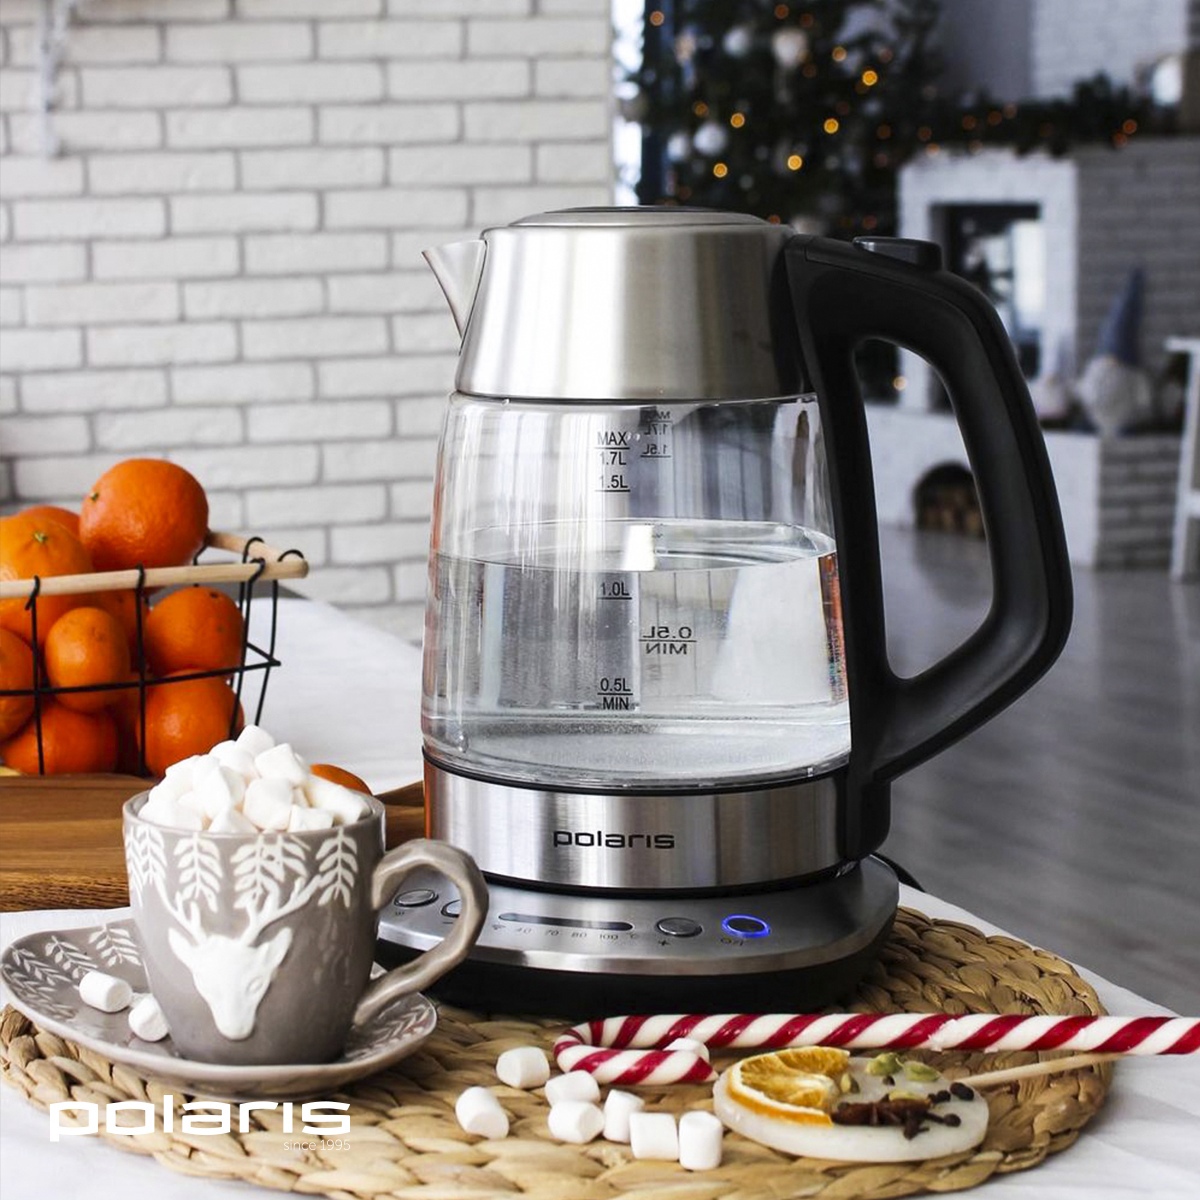 Электрический чайник Polaris стоит на столе рядом с чашкой какао и сладостями